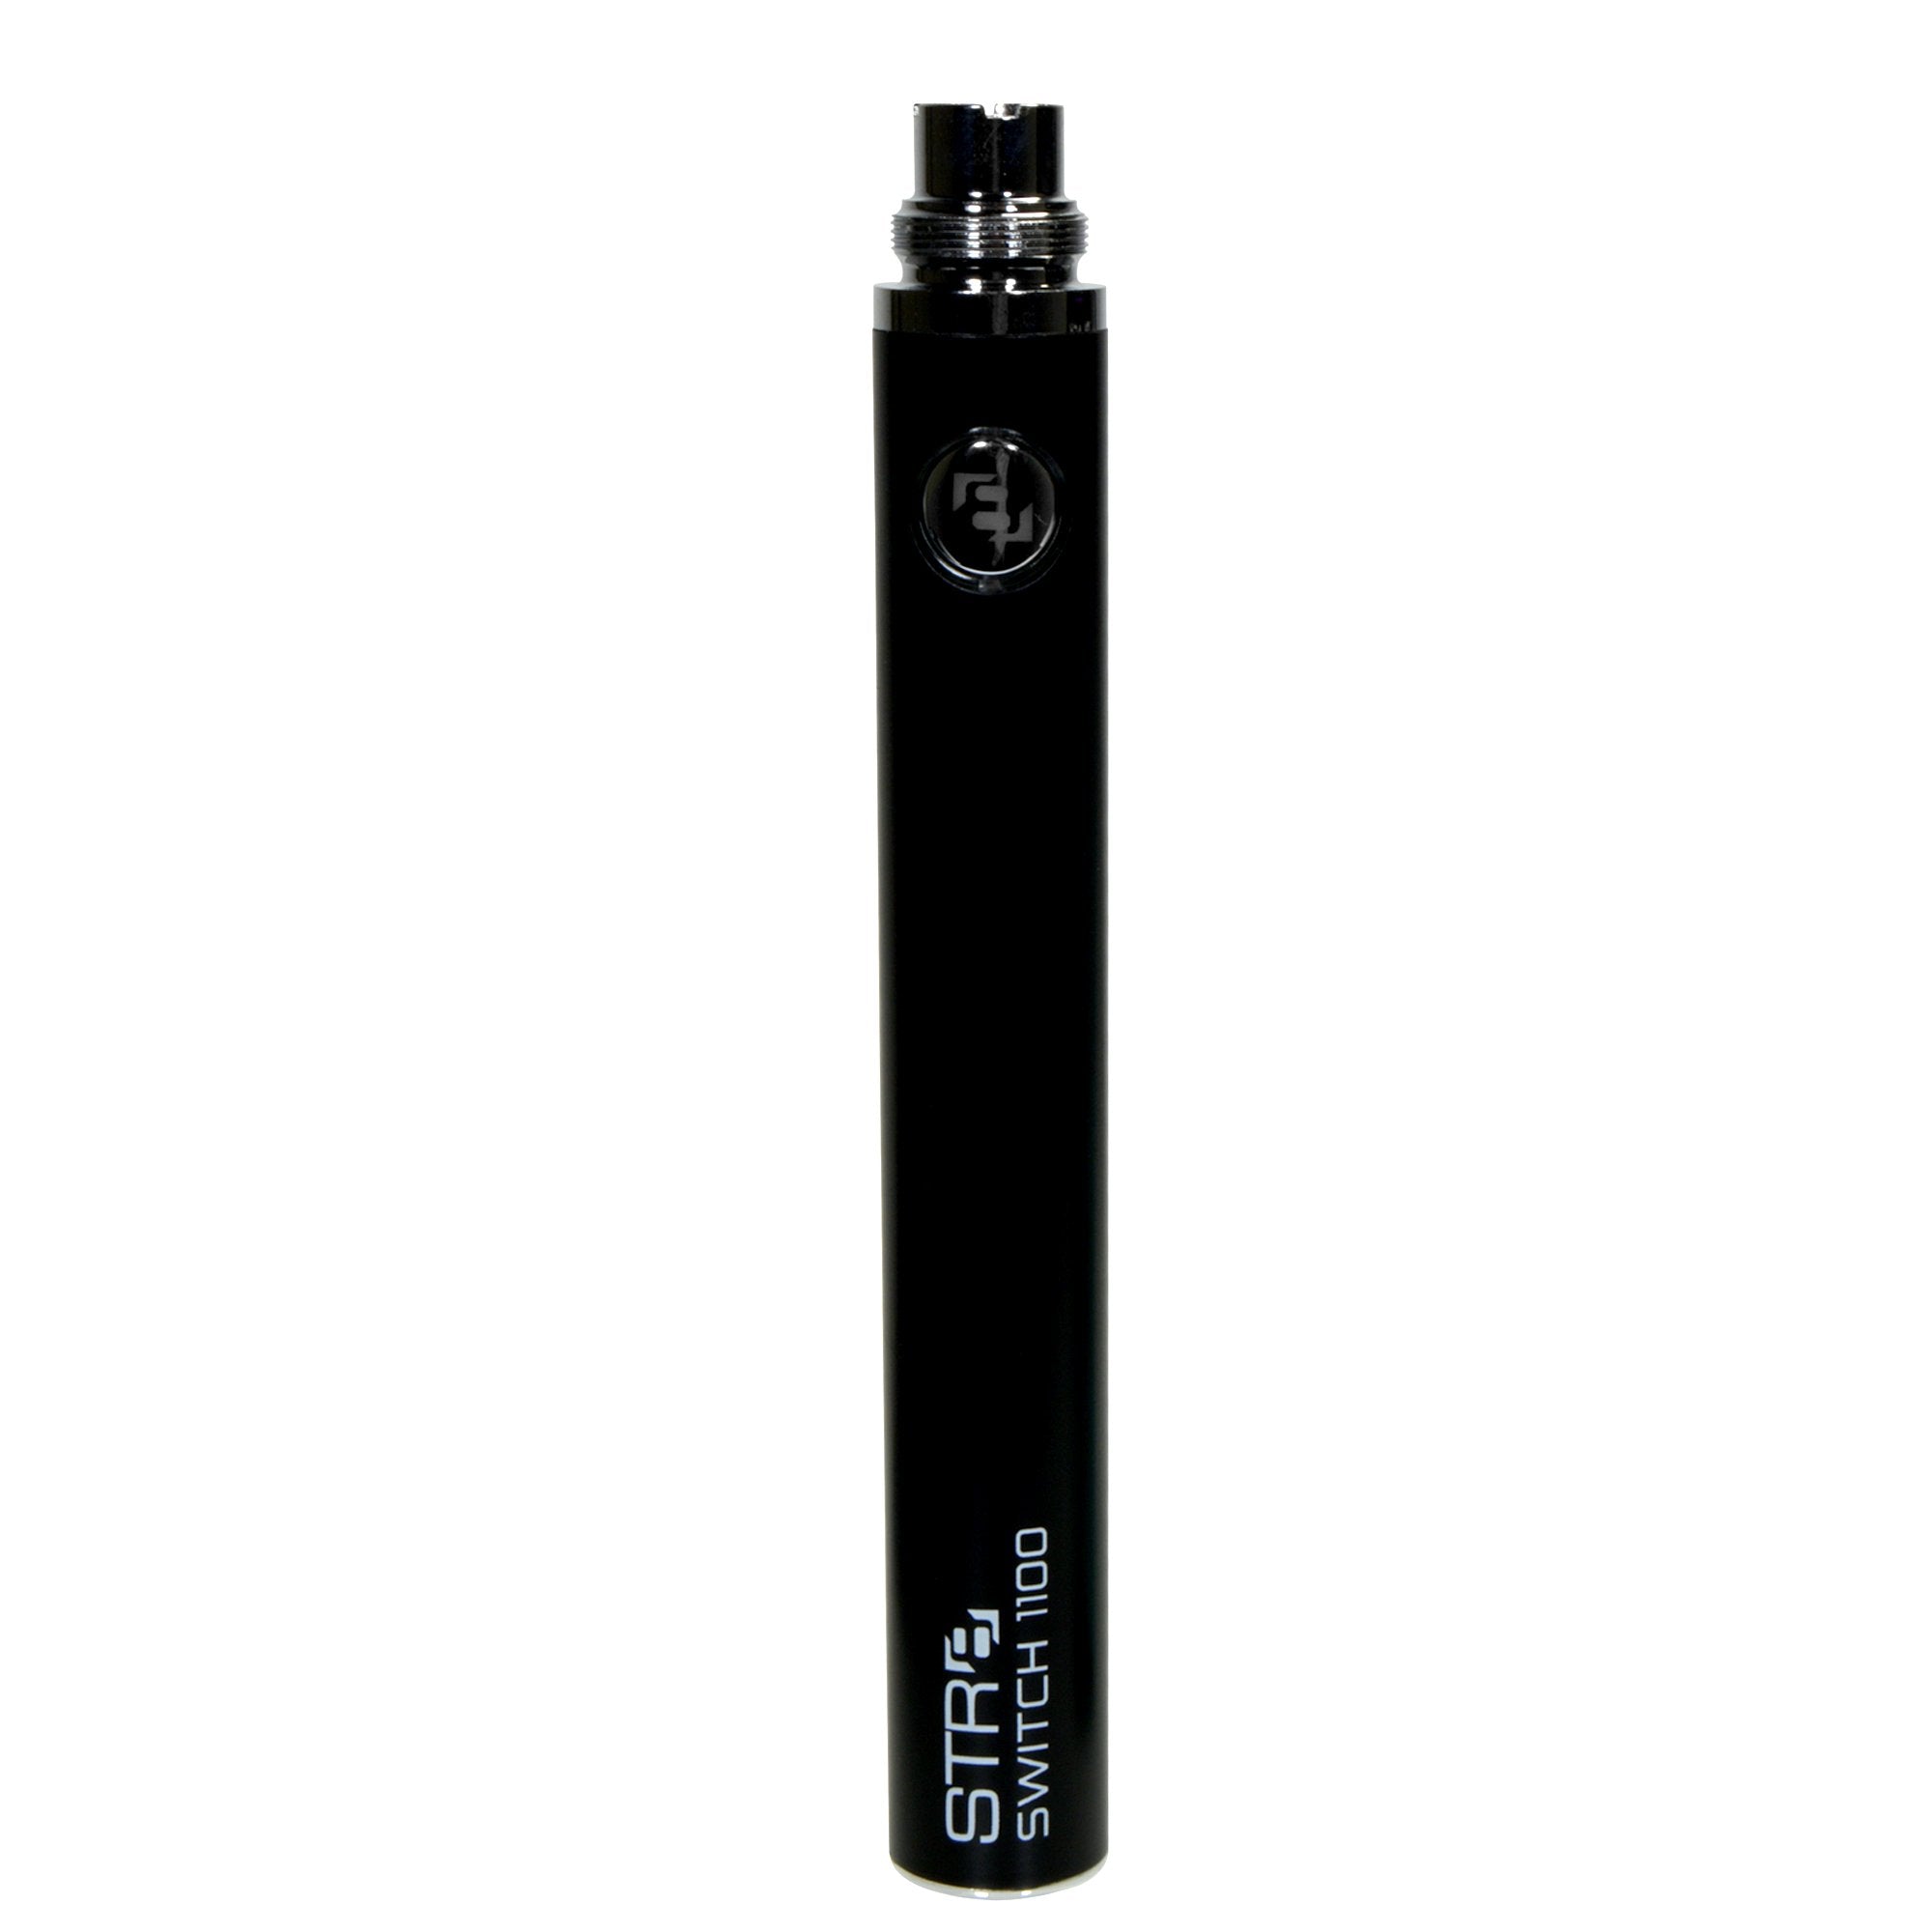 STR8 | Switch Evod Vape Battery 1100mAh - Black - 5 Count - 4